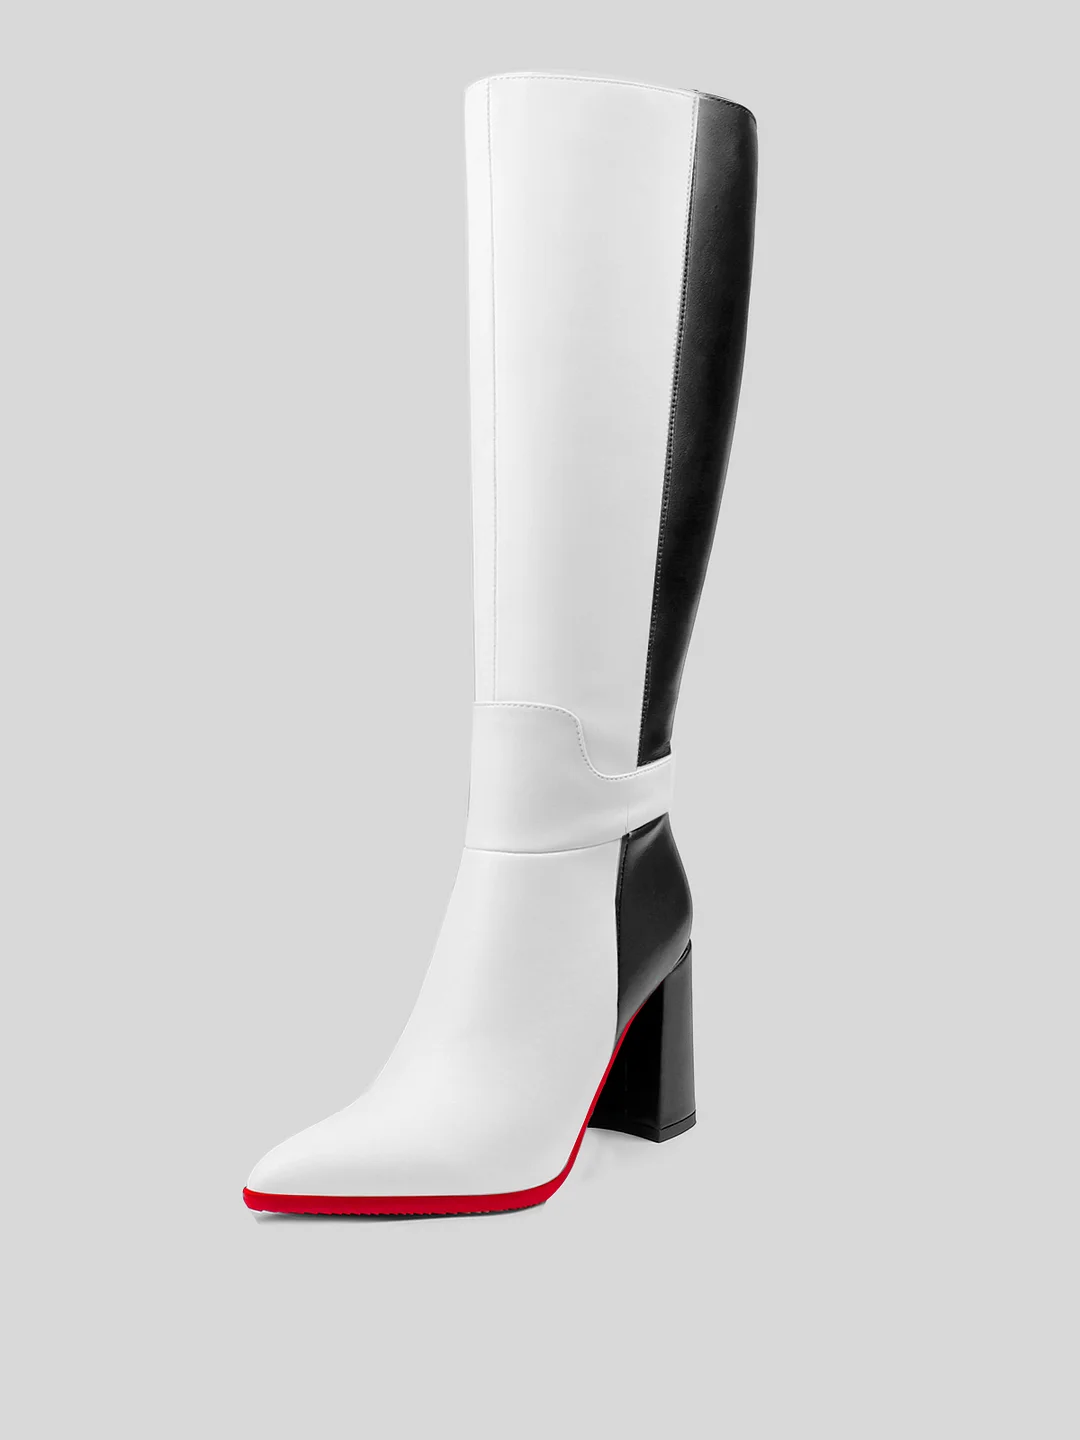 3.7 inch women's  Knee Red Bottom  High Heels  Boots